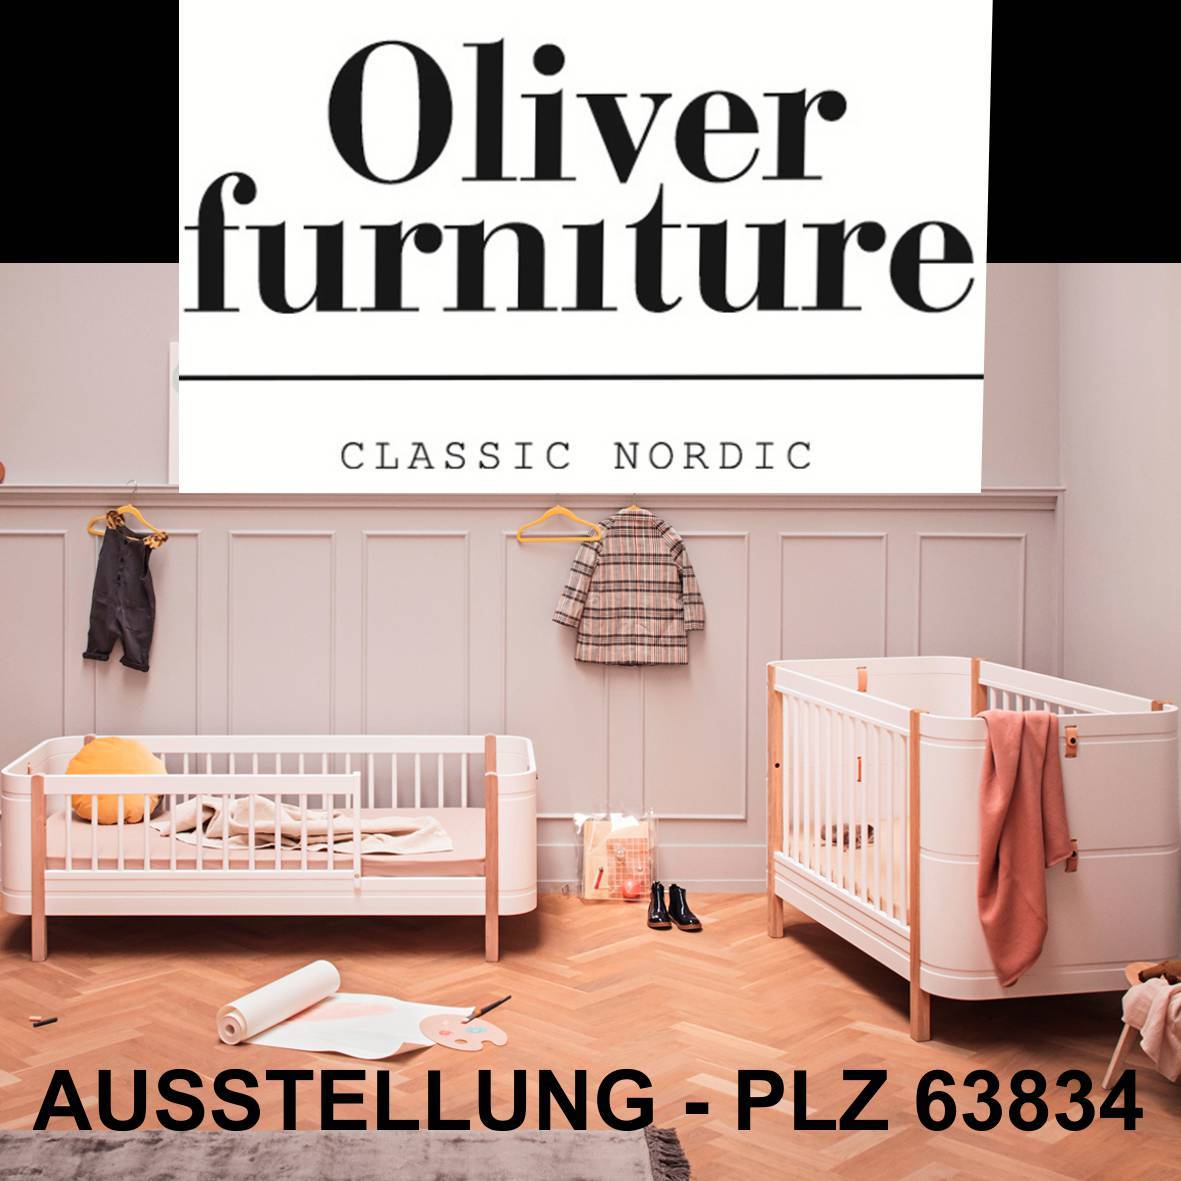 Oliver_furniture-1